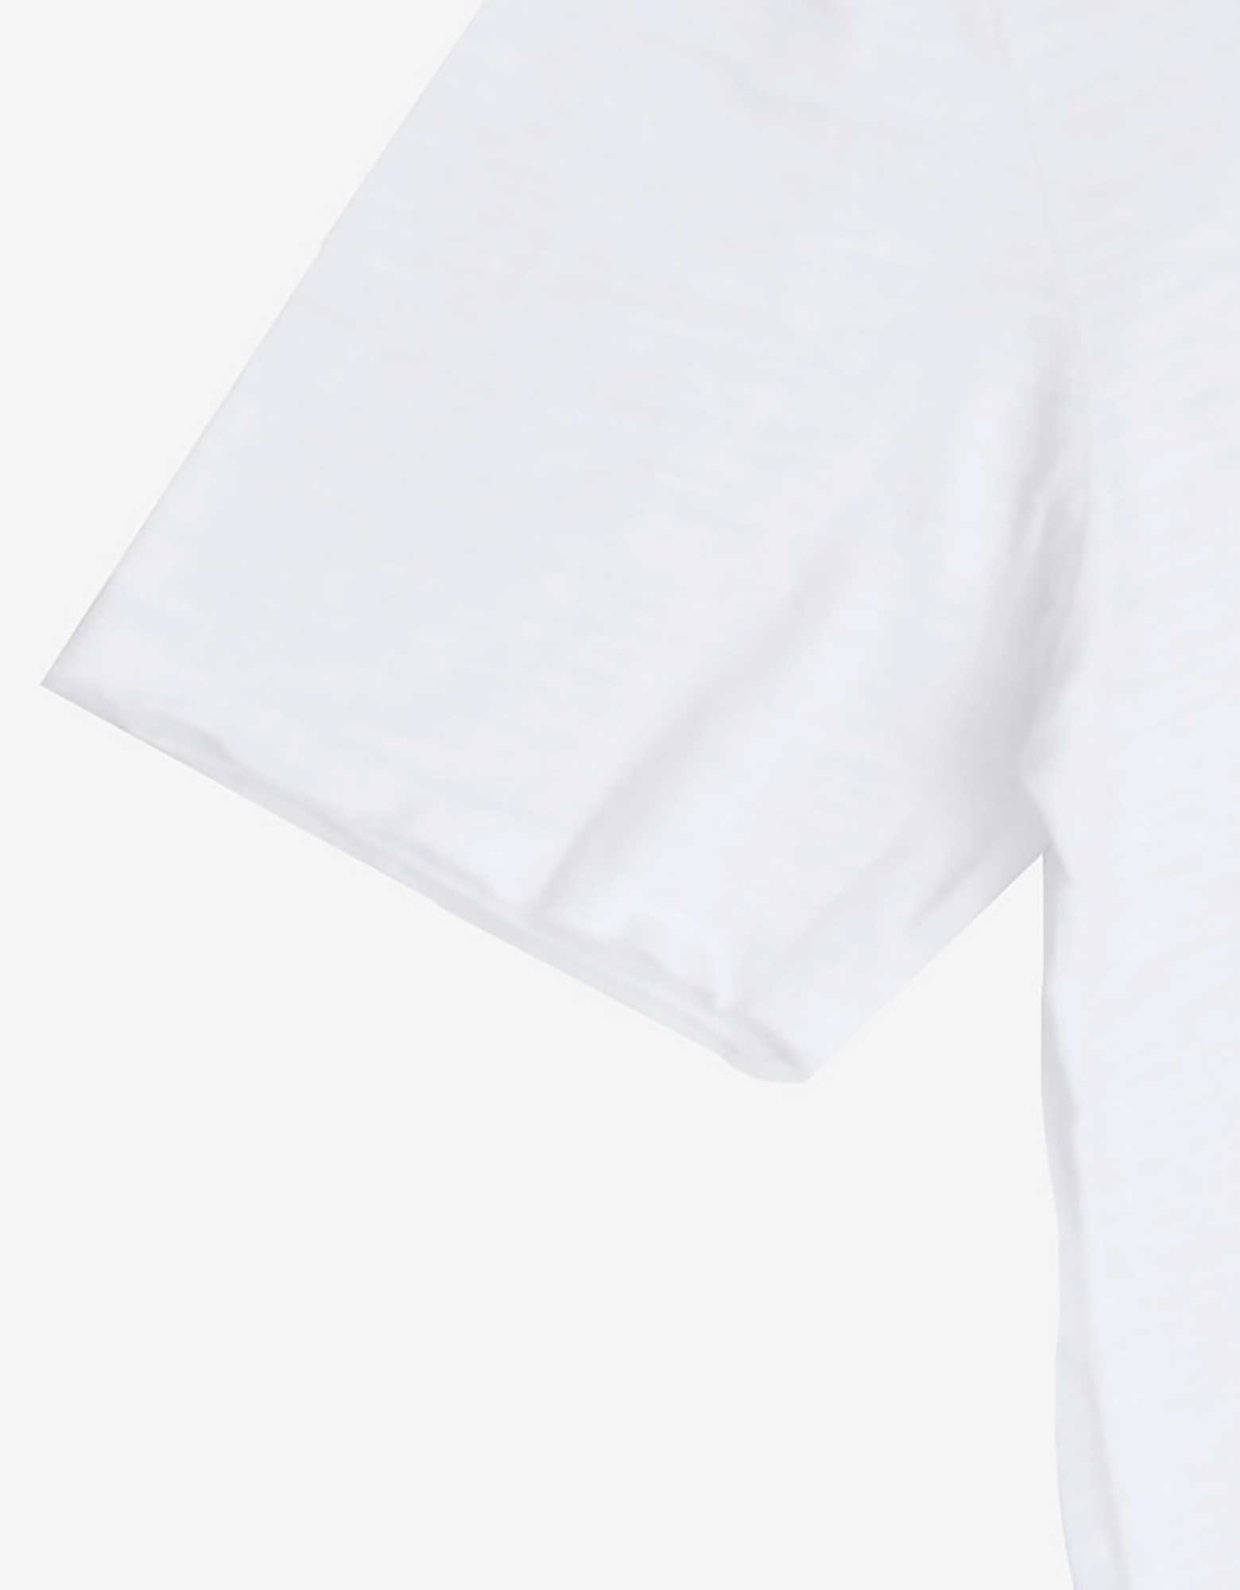 Gianni Lupo Back seam t-shirt white